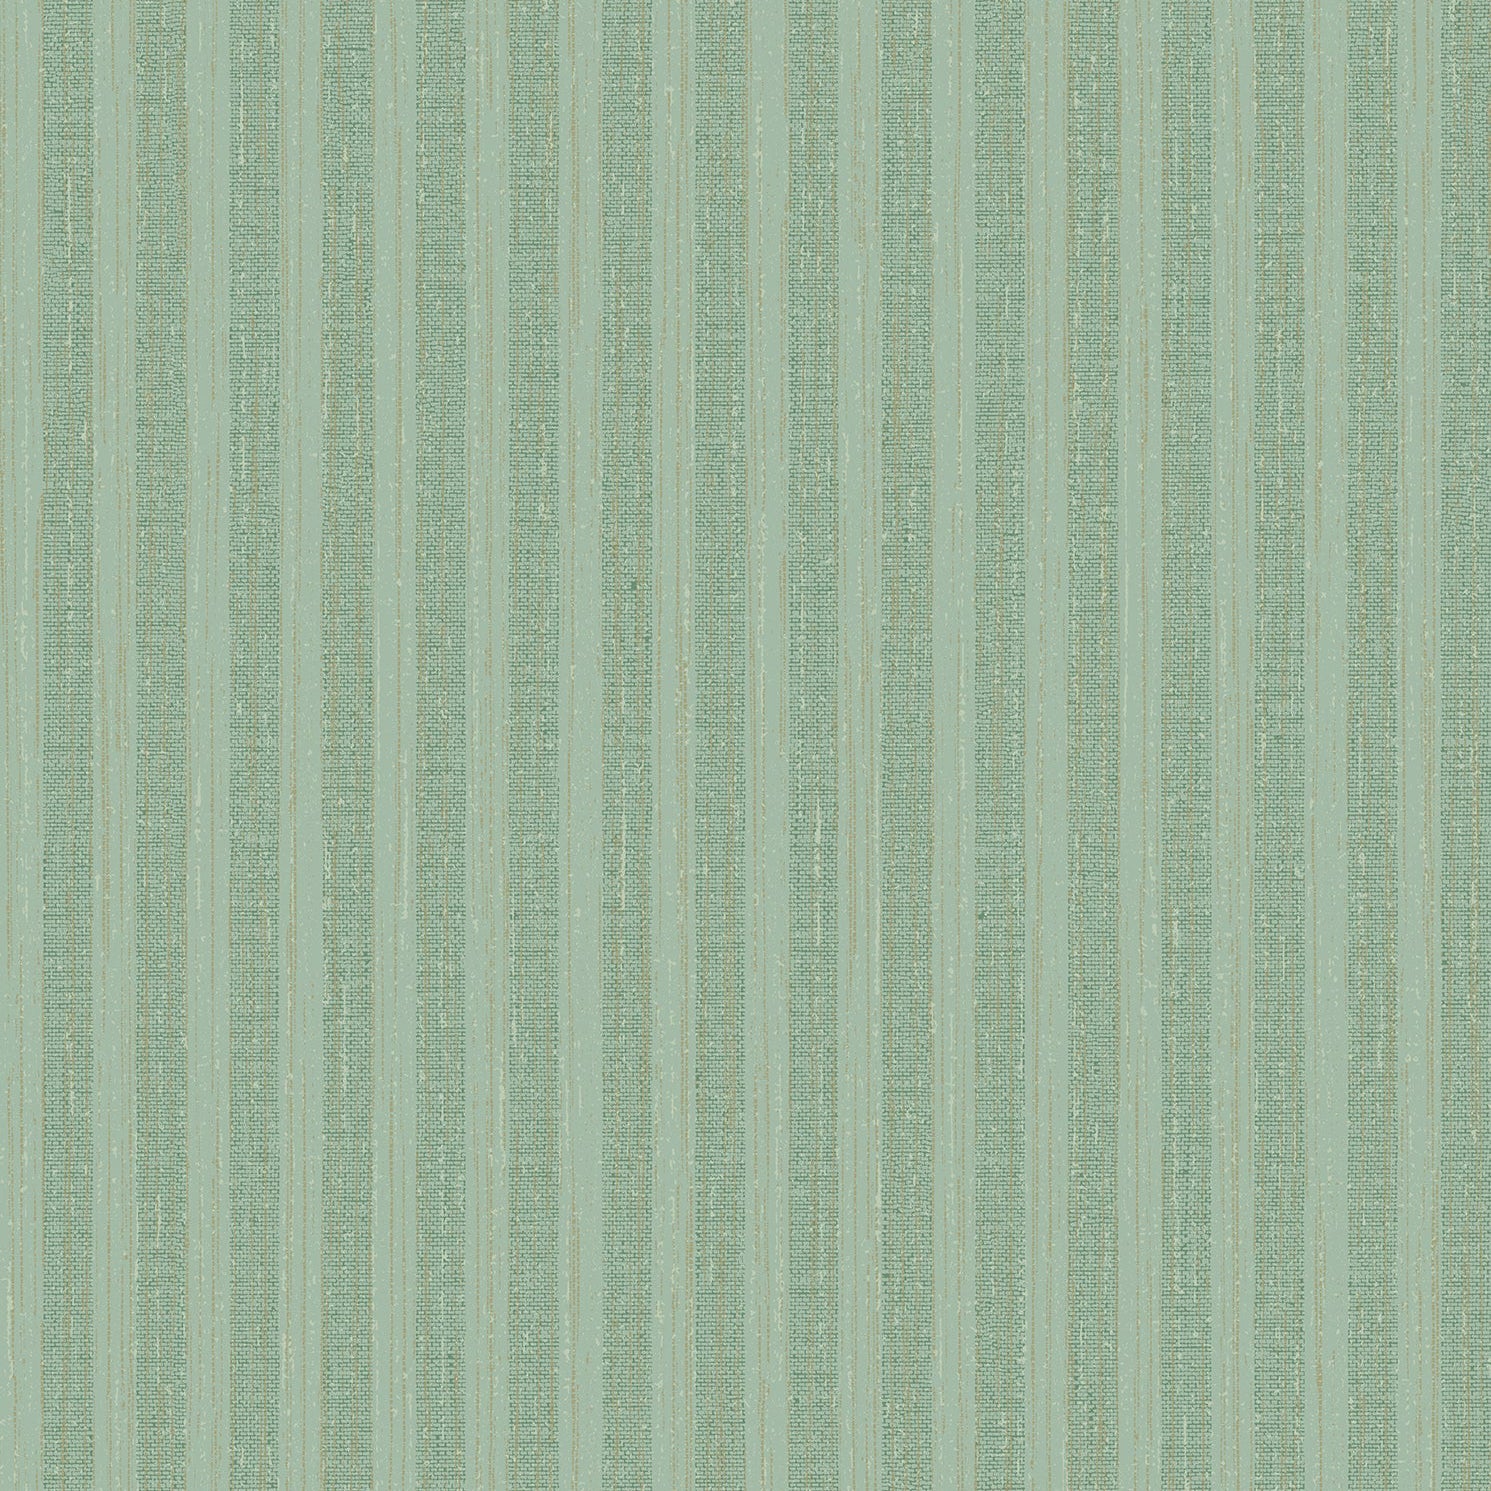 Acquire 2959-SDM06005 Textural Essentials Brodie Green Stripe Green Brewster Wallpaper